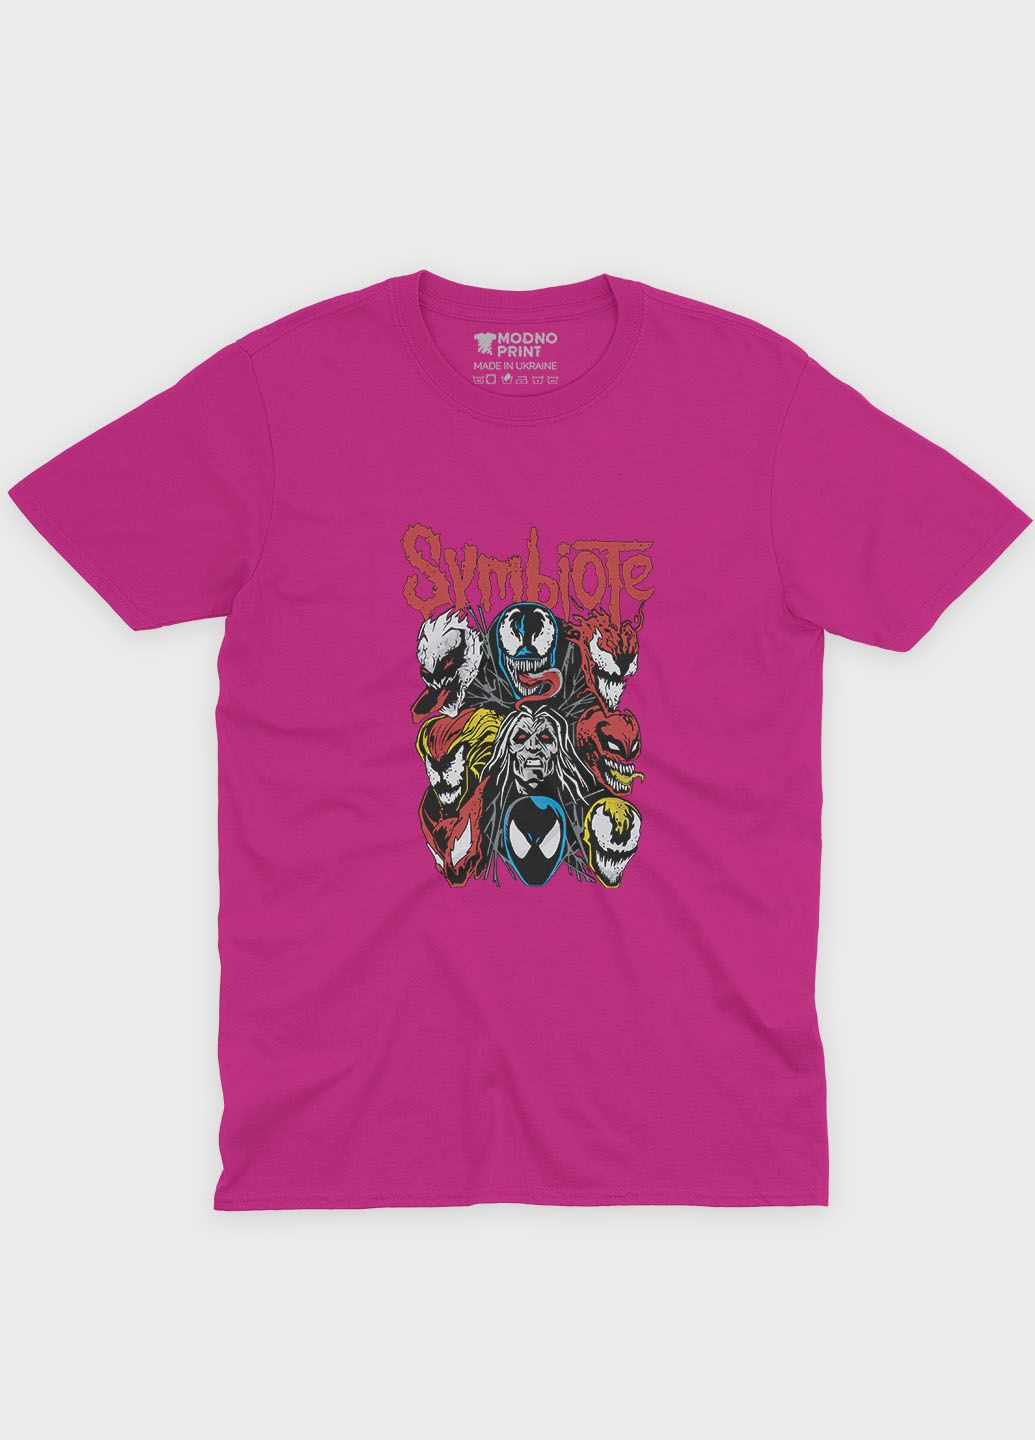 Розовая демисезонная футболка для мальчика с принтом супервора - веном (ts001-1-fuxj-006-013-025-b) Modno